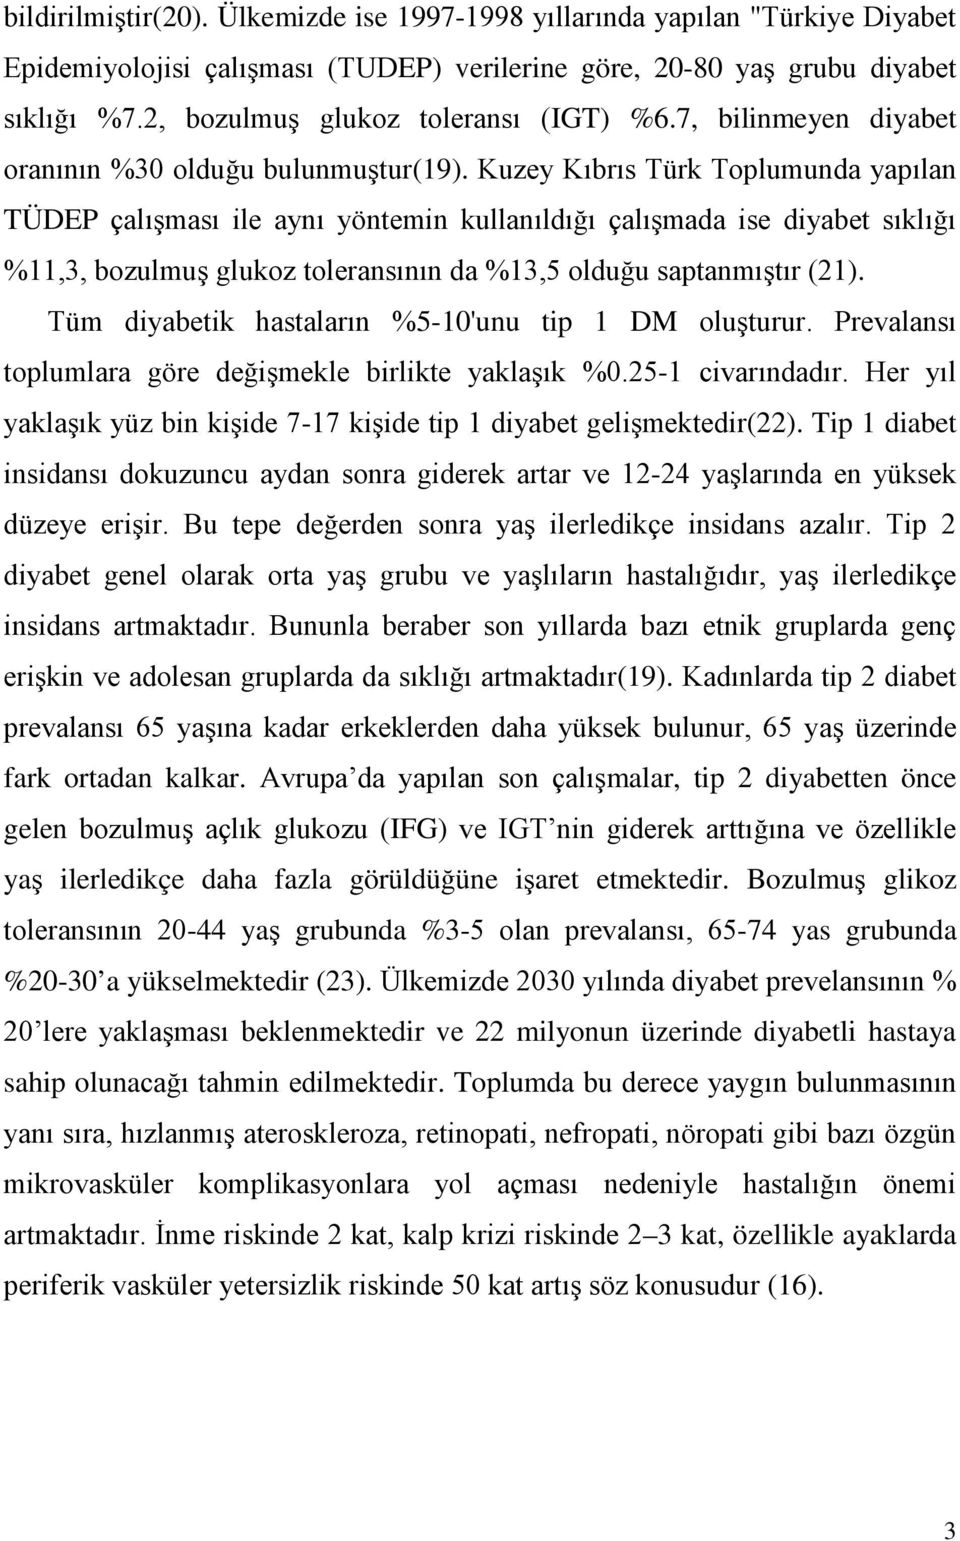 Kuzey Kıbrıs Türk Toplumunda yapılan TÜDEP çalışması ile aynı yöntemin kullanıldığı çalışmada ise diyabet sıklığı %11,3, bozulmuş glukoz toleransının da %13,5 olduğu saptanmıştır (21).